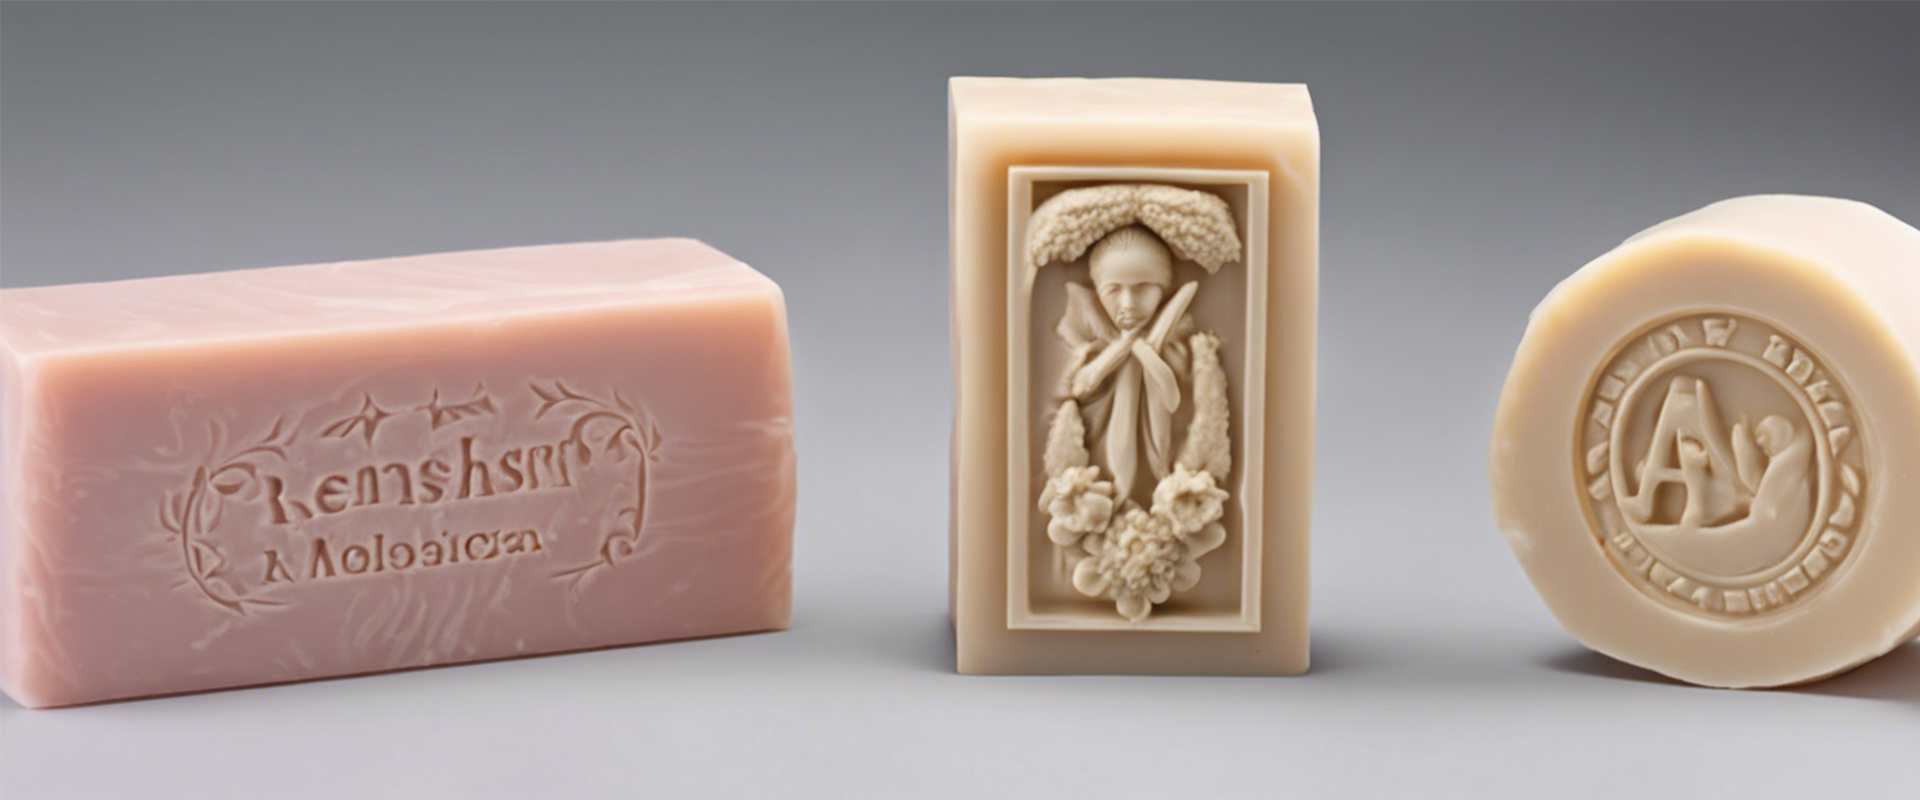 custom soap molds